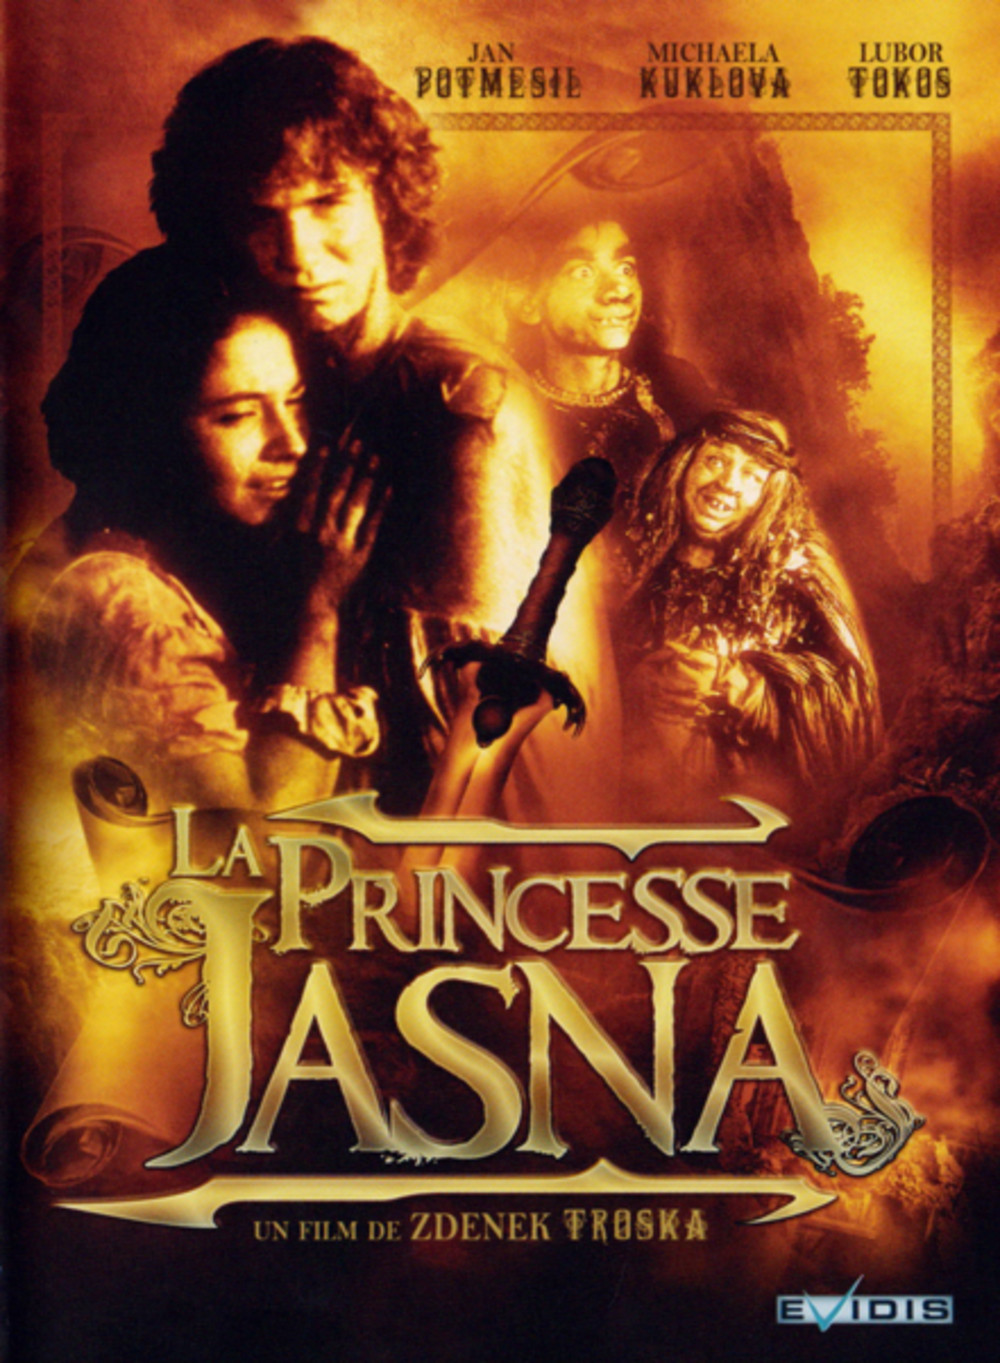 O princezne Jasnence a létajícím sevci (1987) with English Subtitles on DVD on DVD